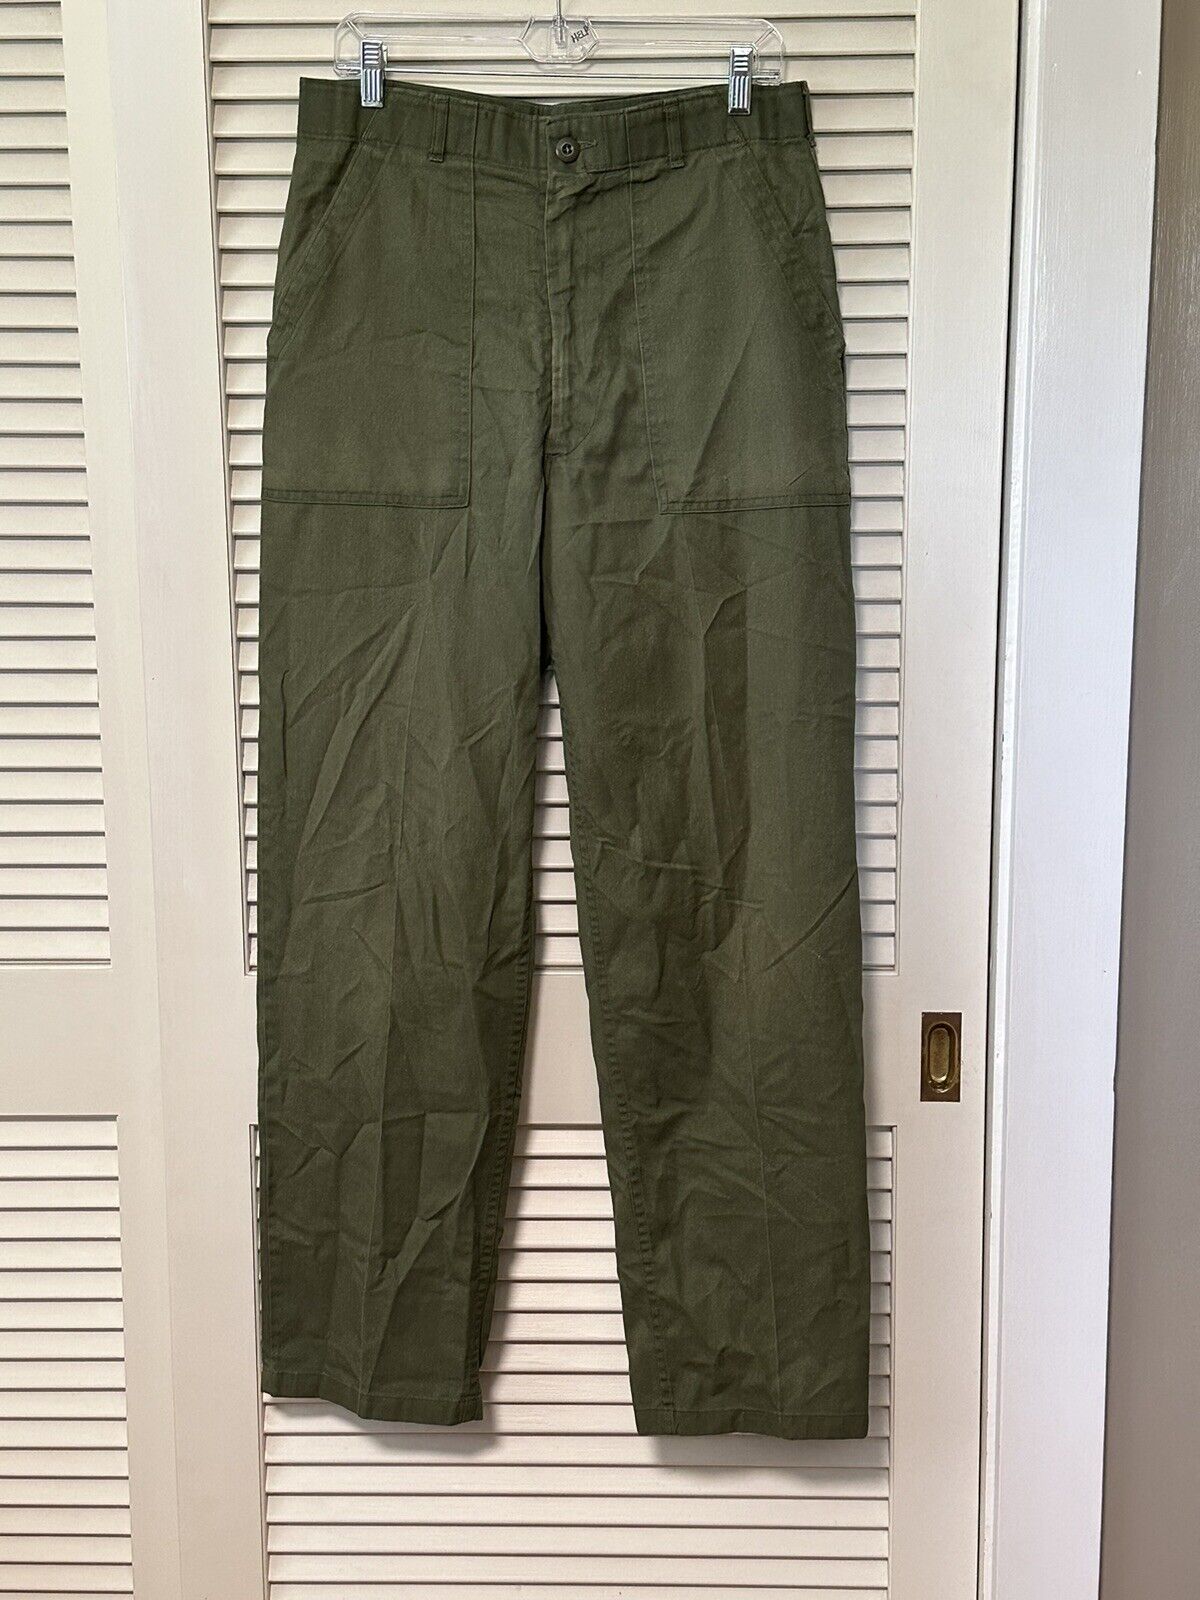 VTG 1970s Military Utility Trousers OG-507 Pants 34x33 Green Vietnam OG-107